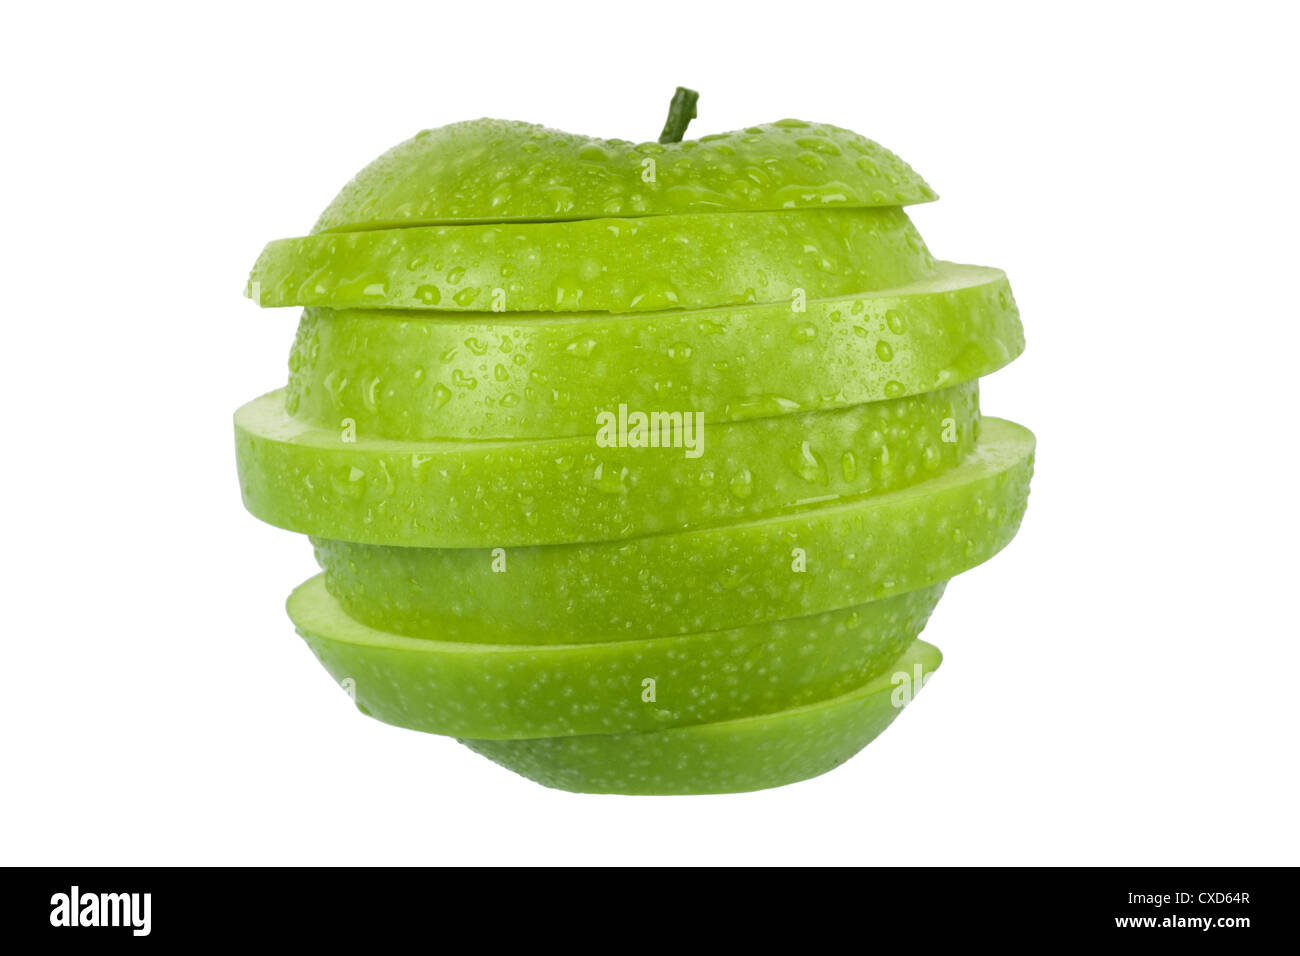 Green Apple Stockfoto